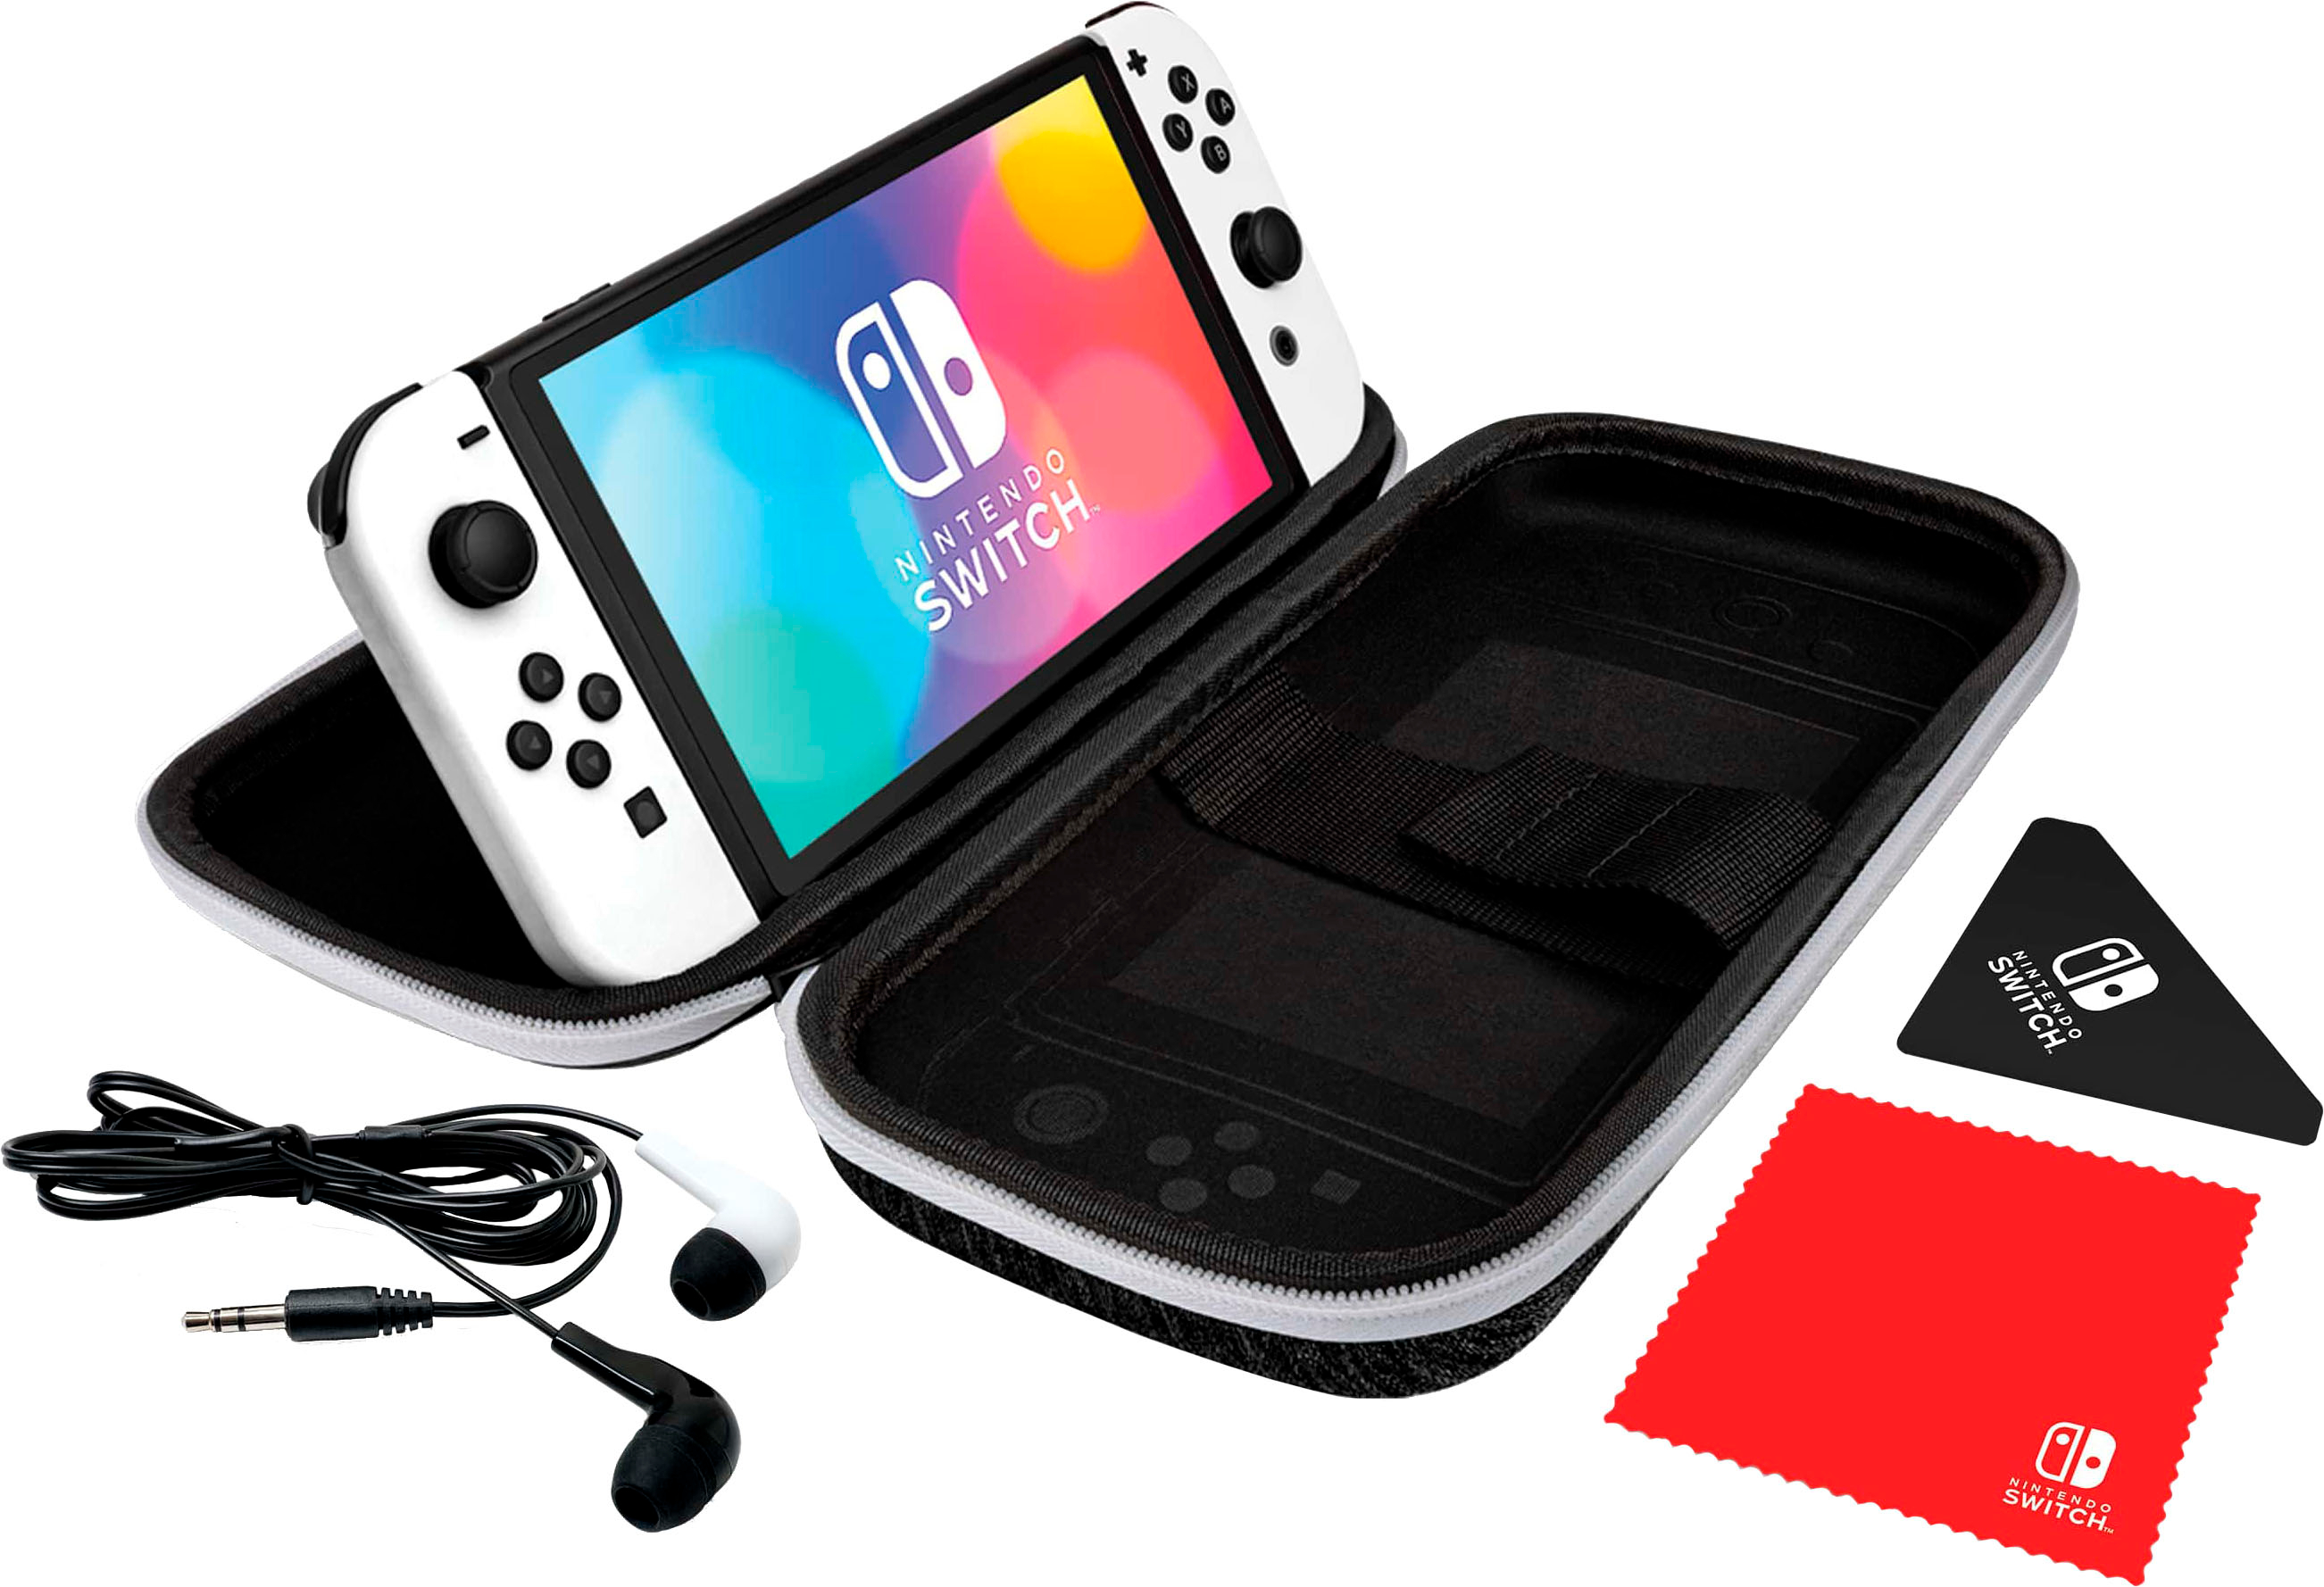 Nintendo Switch Oled Kit